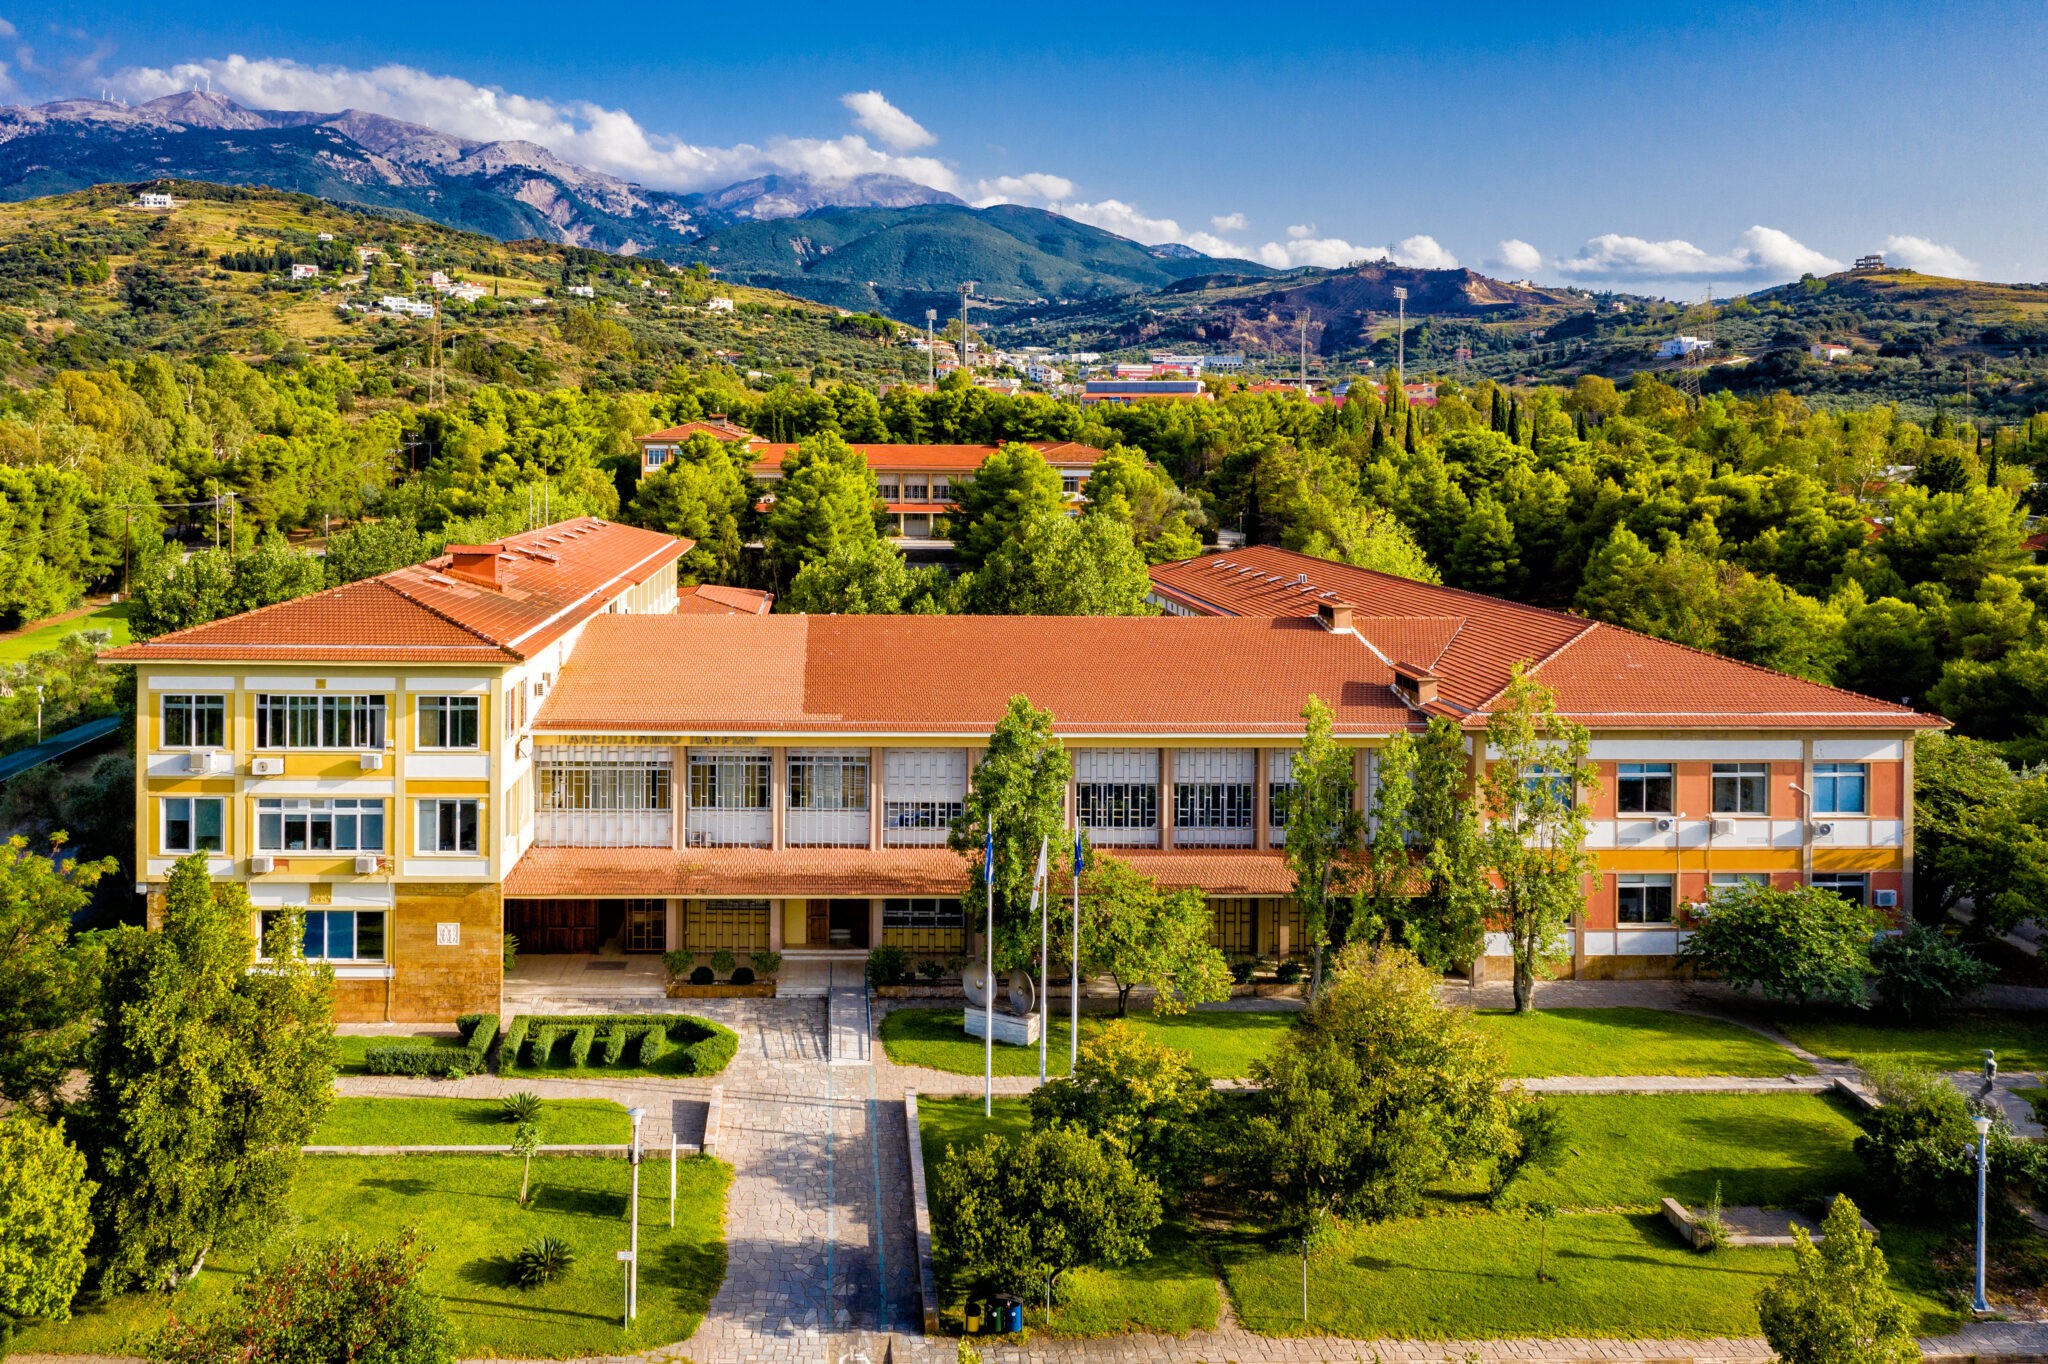 University of Patras School of Health Sciences